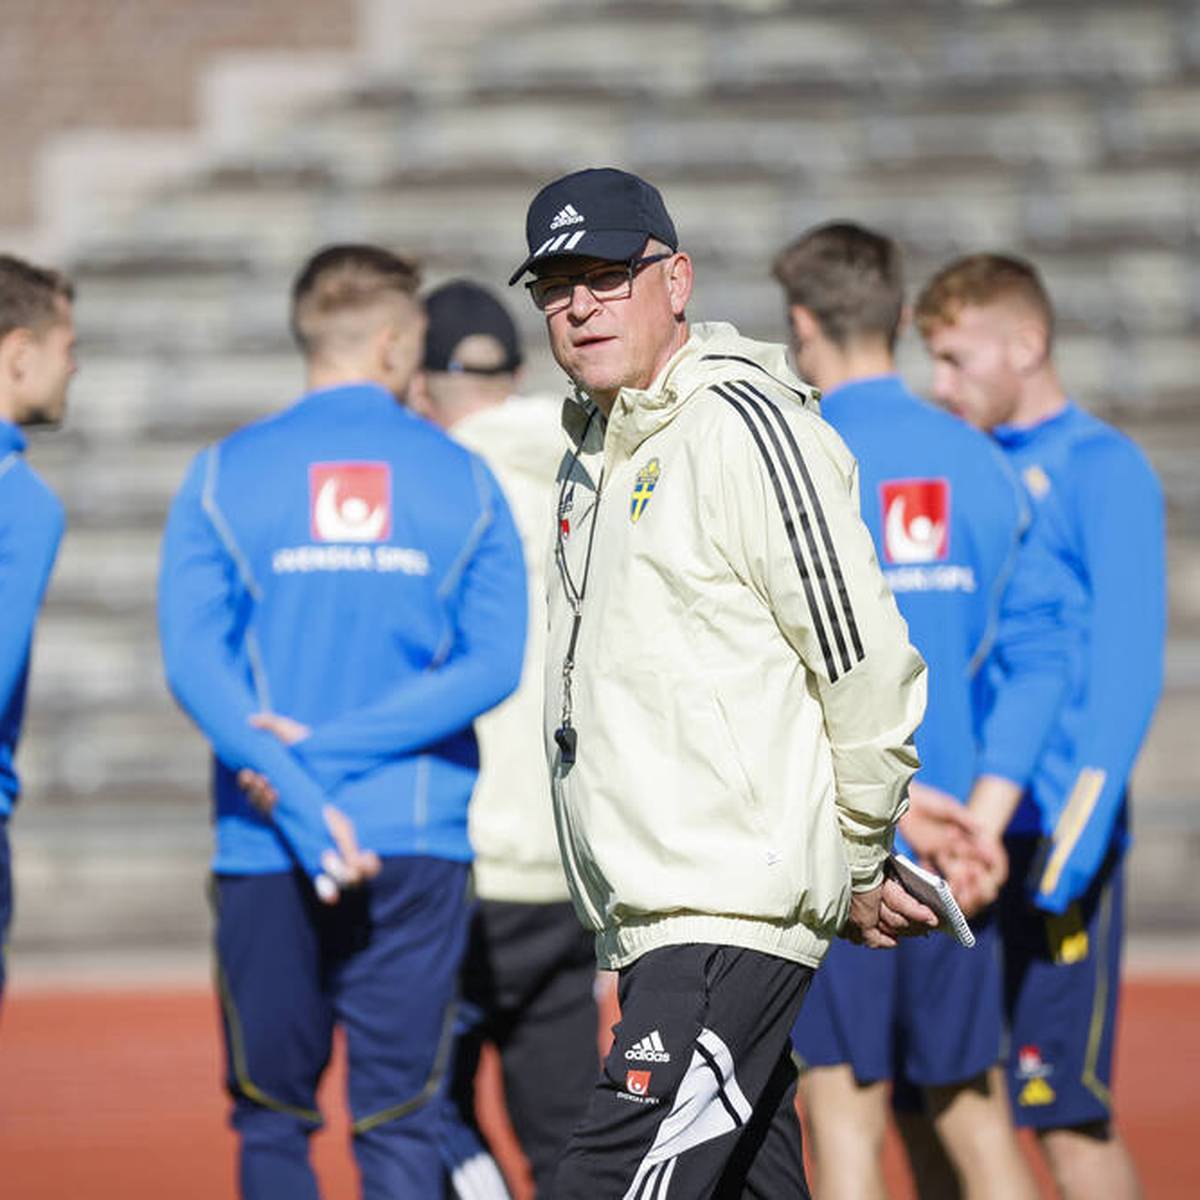 Der schwedische Fußball-Nationaltrainer Janne Andersson verzichtet auf eine Reise zur WM in Katar.